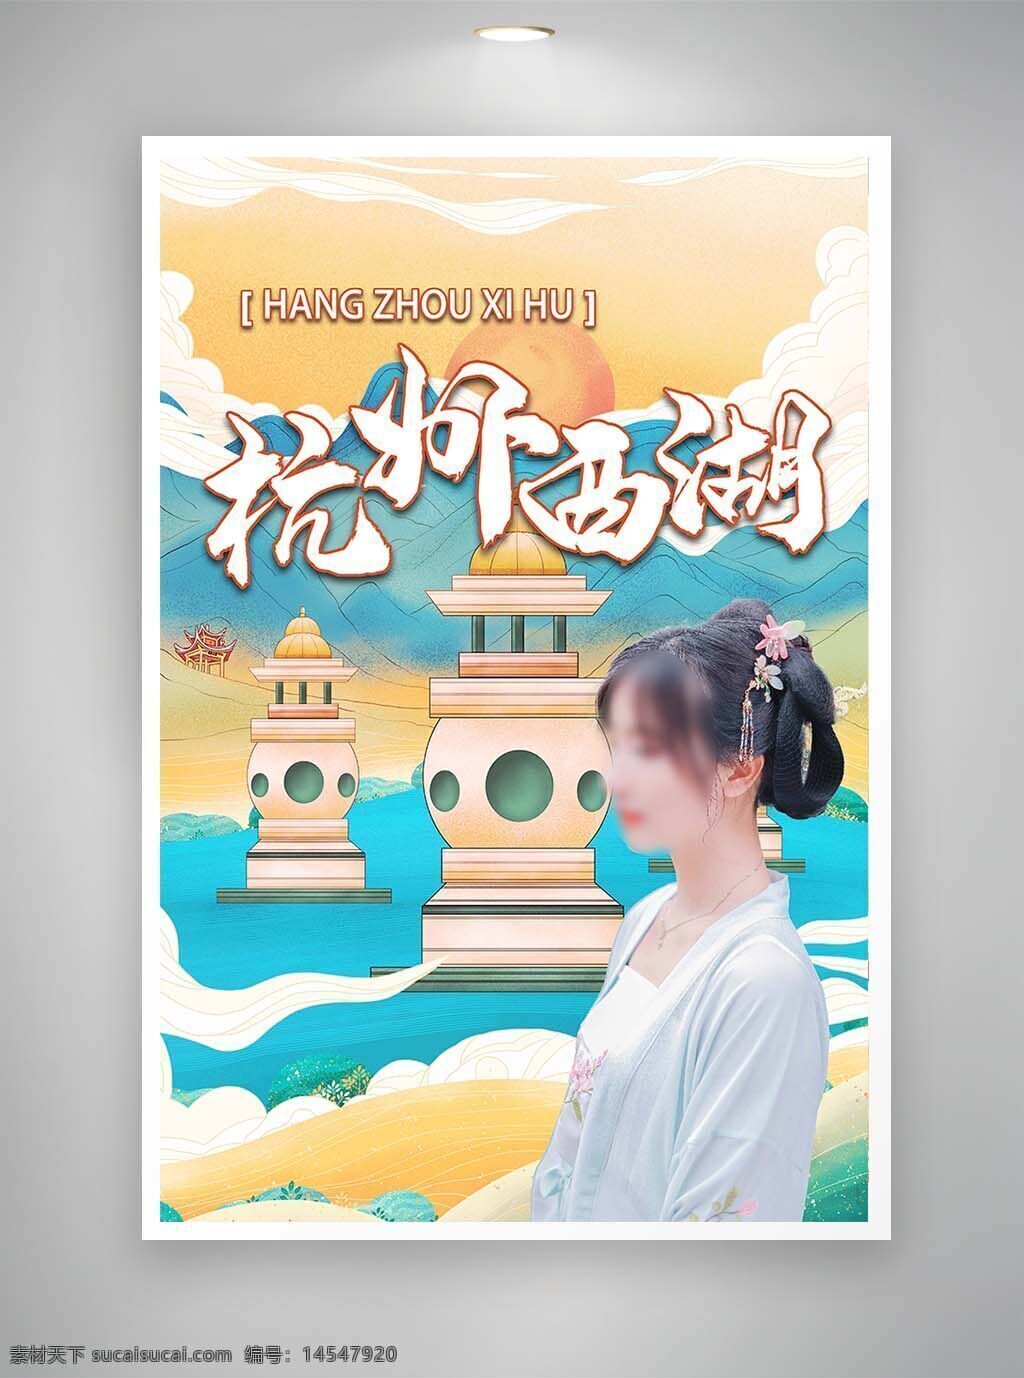 中国风海报 促销海报 节日海报 古风海报 杭州海报